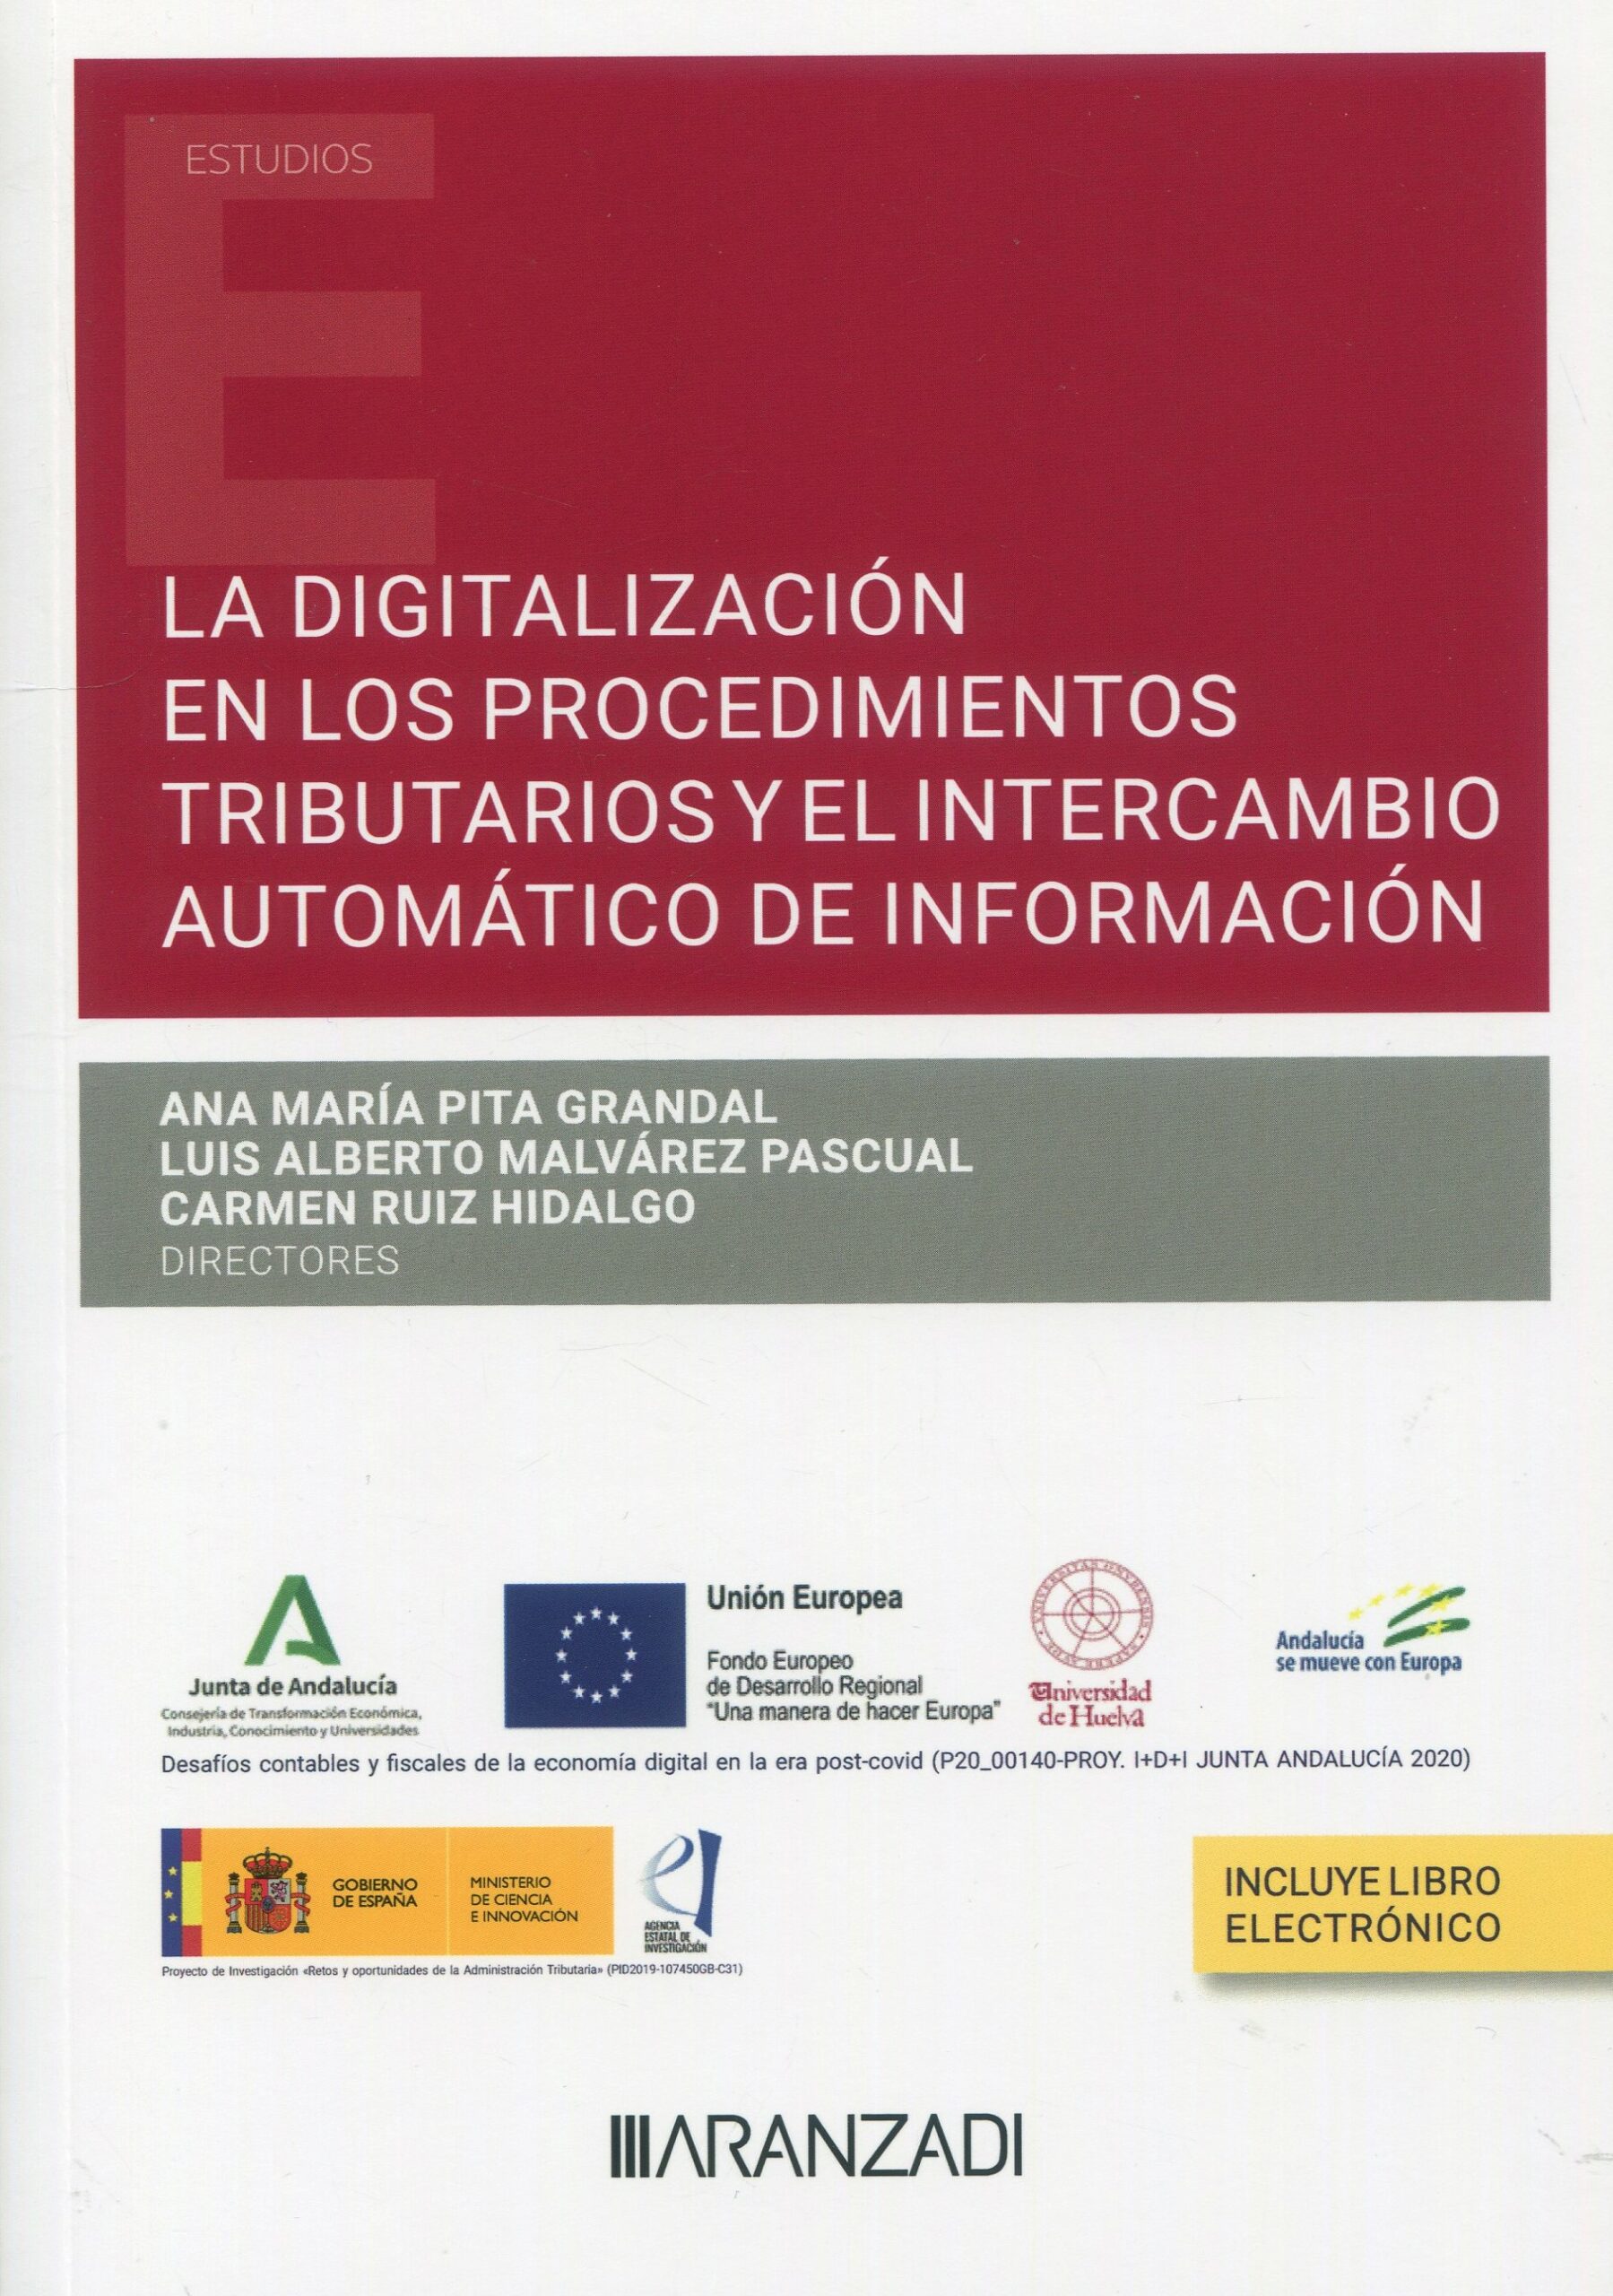 La digitalización en los procedimientos tributarios y el intercambio automático de información